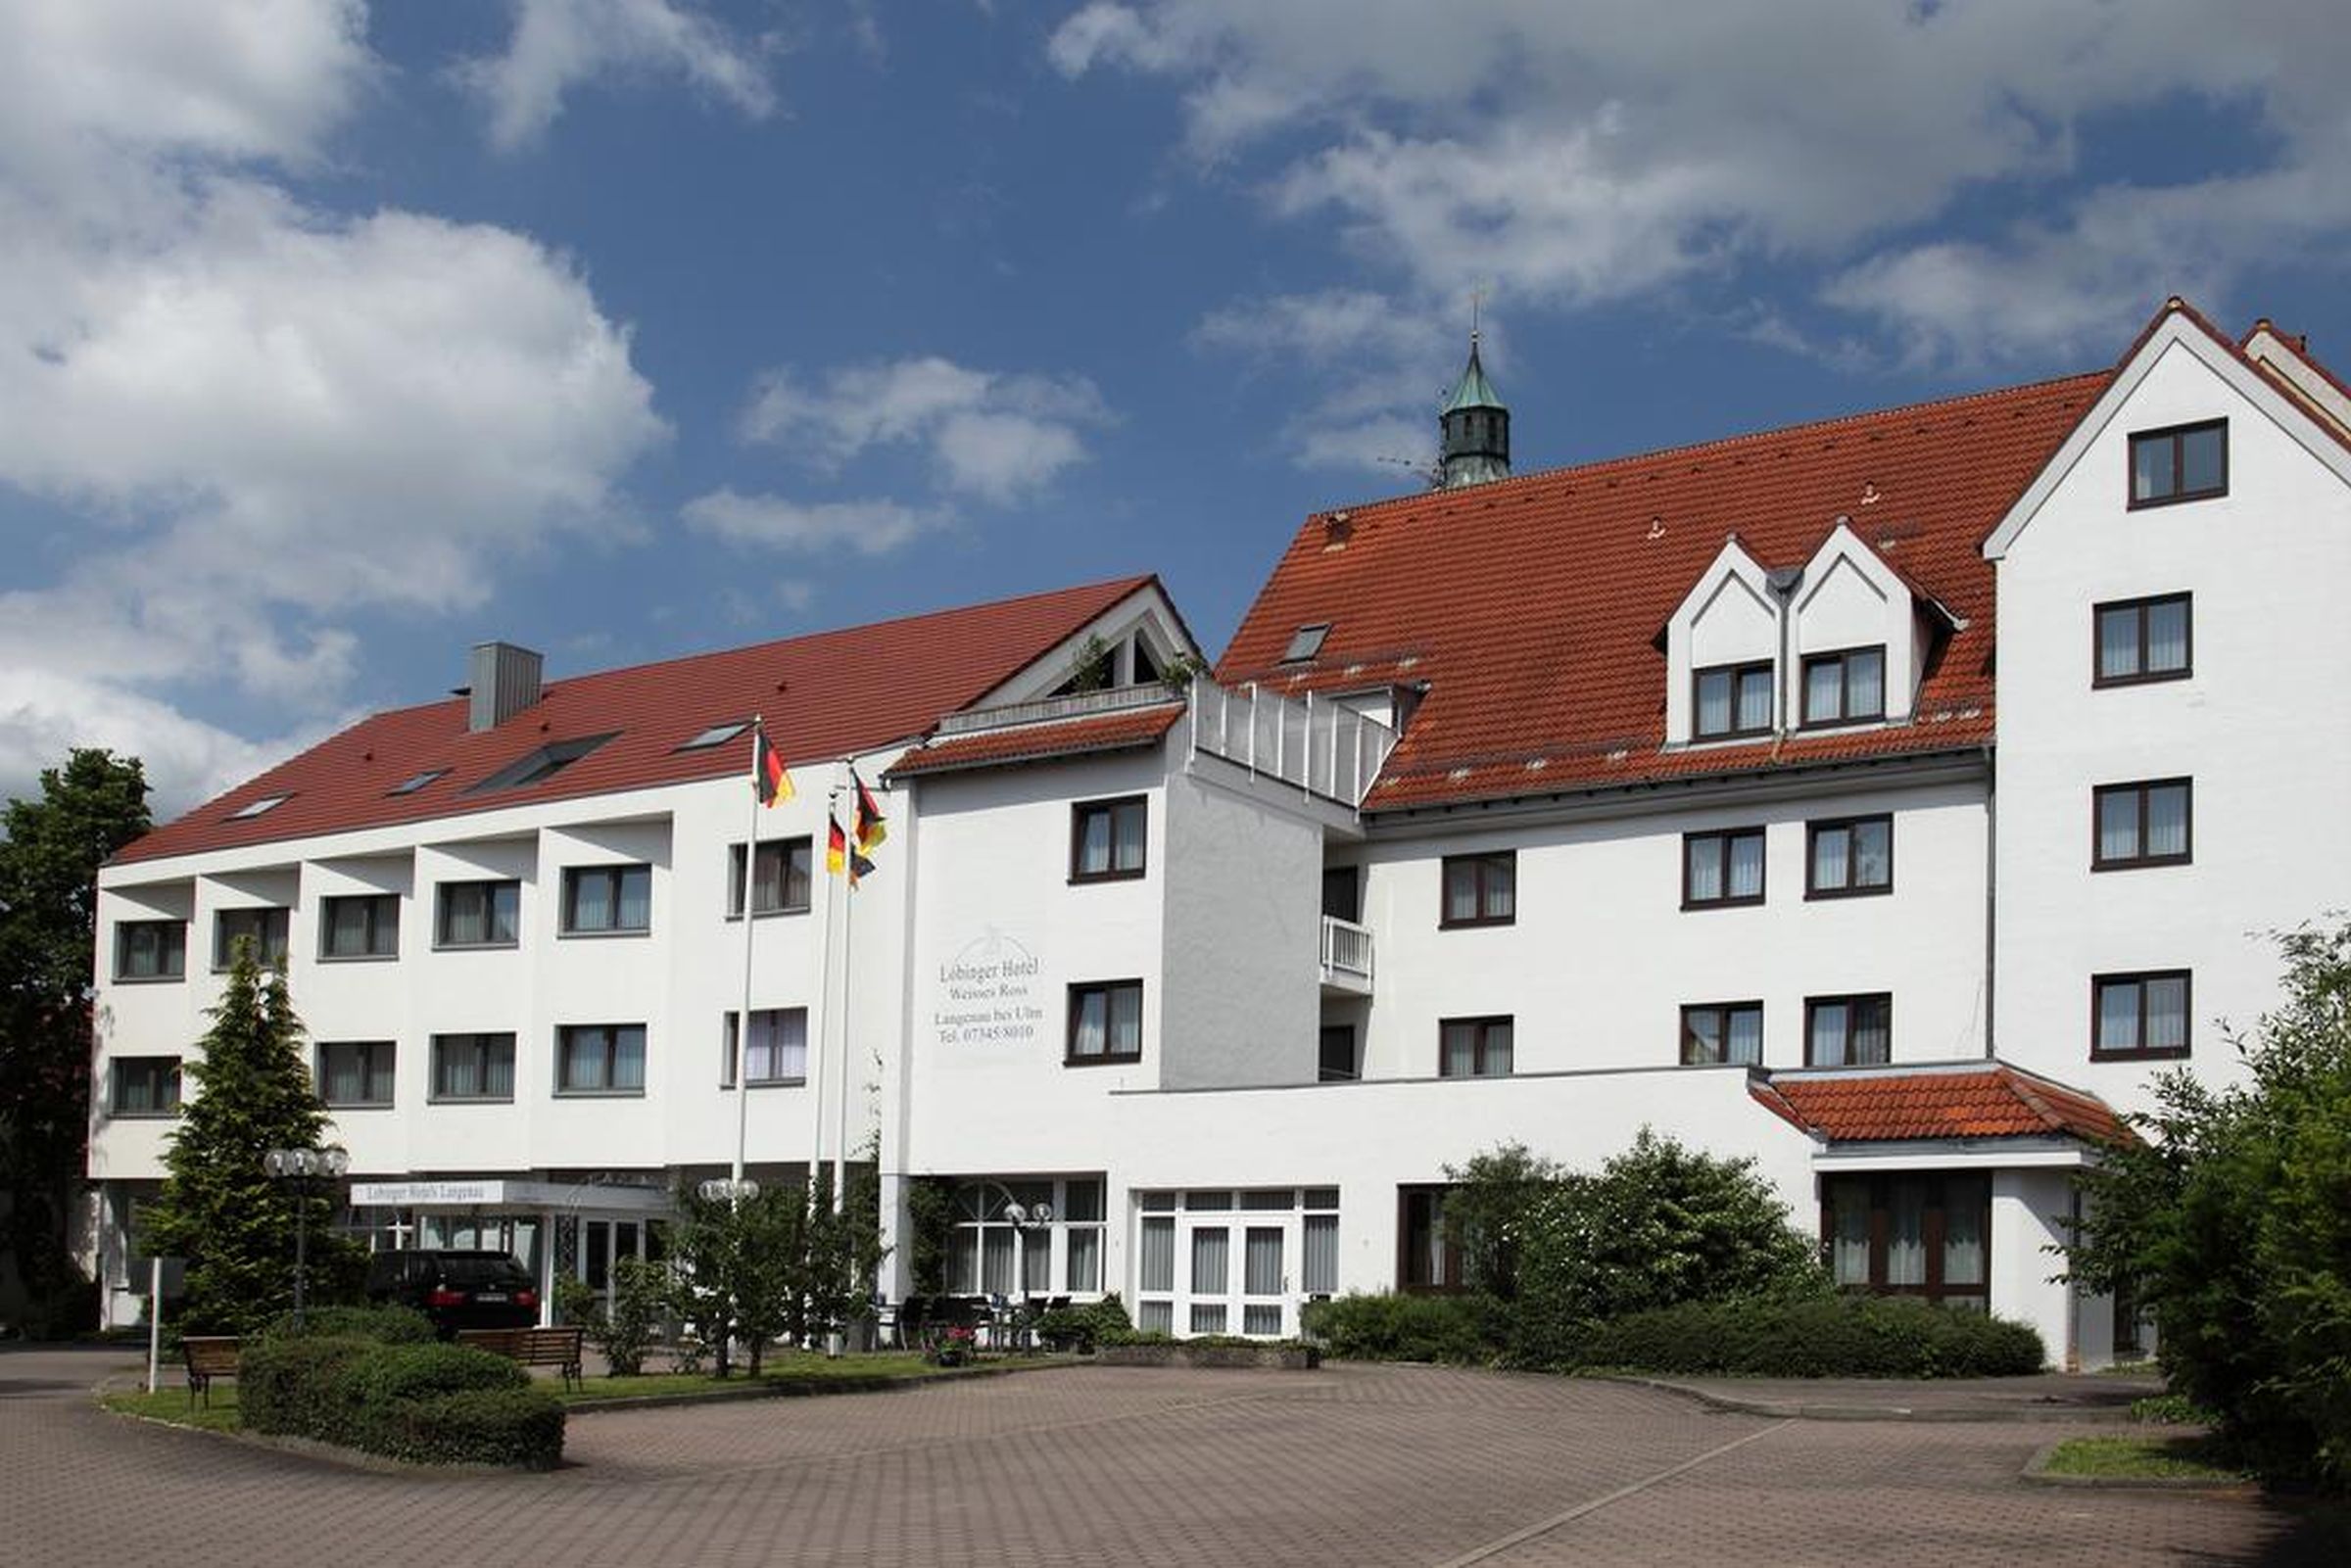 Lobinger Hotel - Weißes Ross, (Langenau). Dr Ferienwohnung in Deutschland